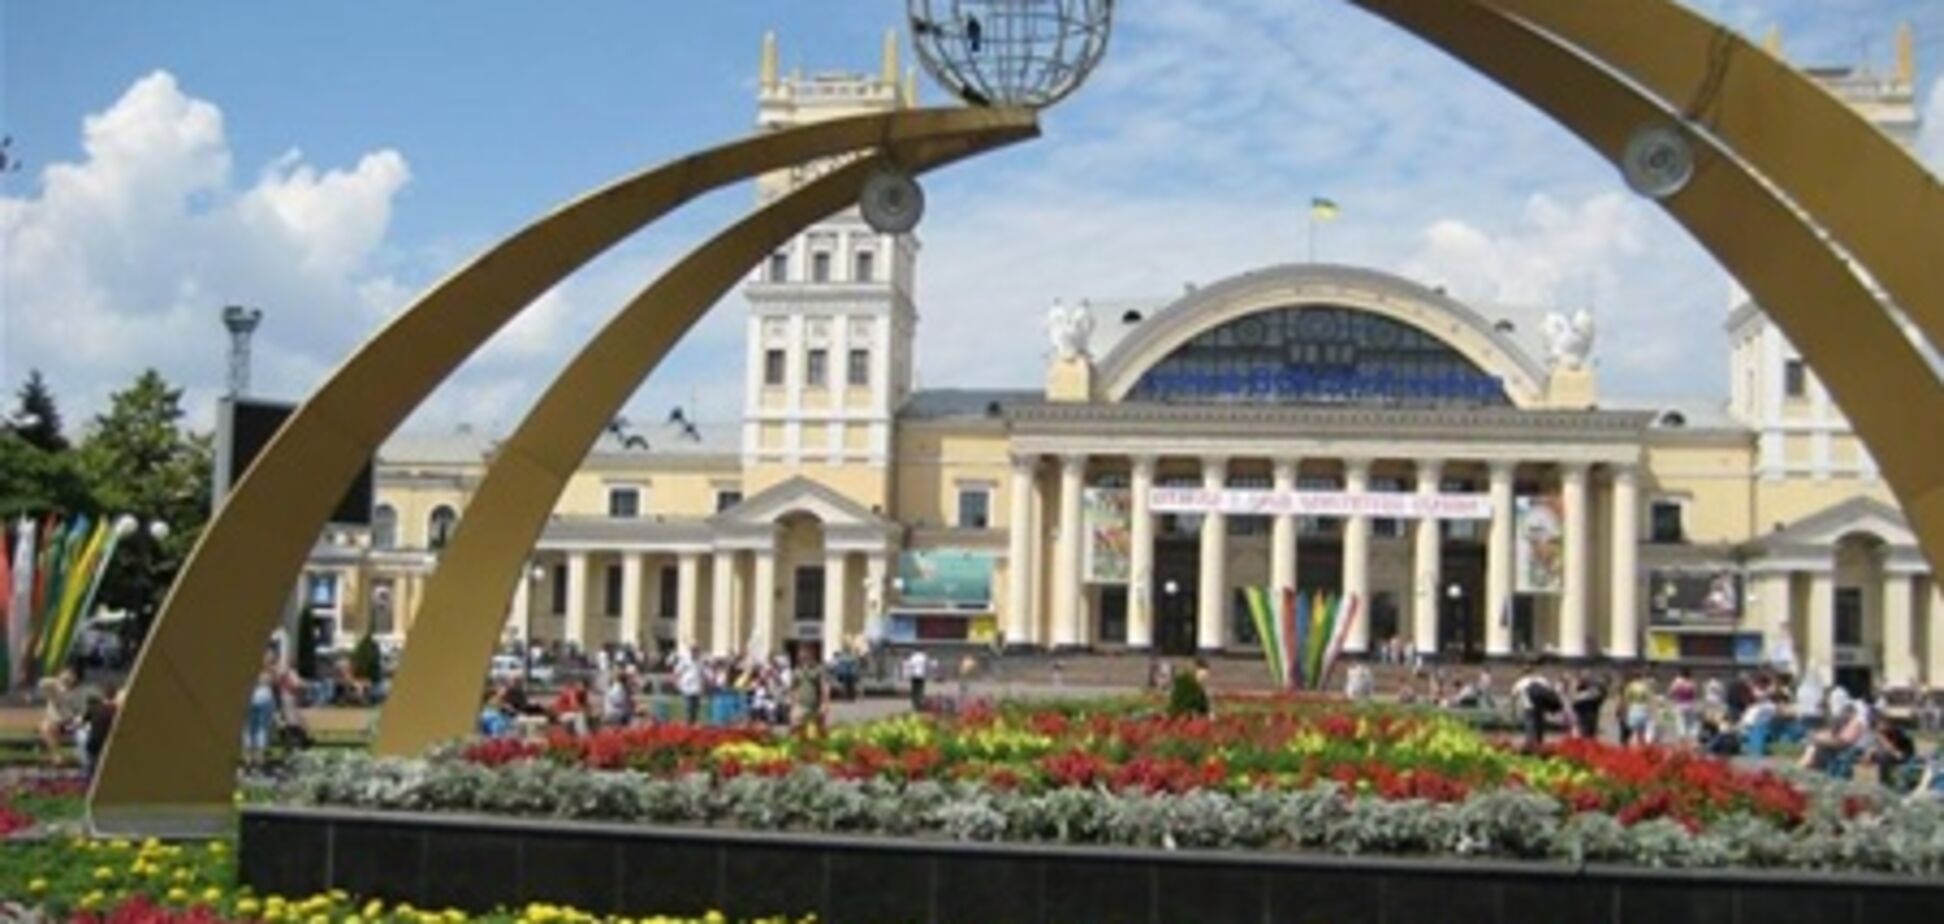 Харькову 'присудили' статус столицы украинско-российских взаимоотношений